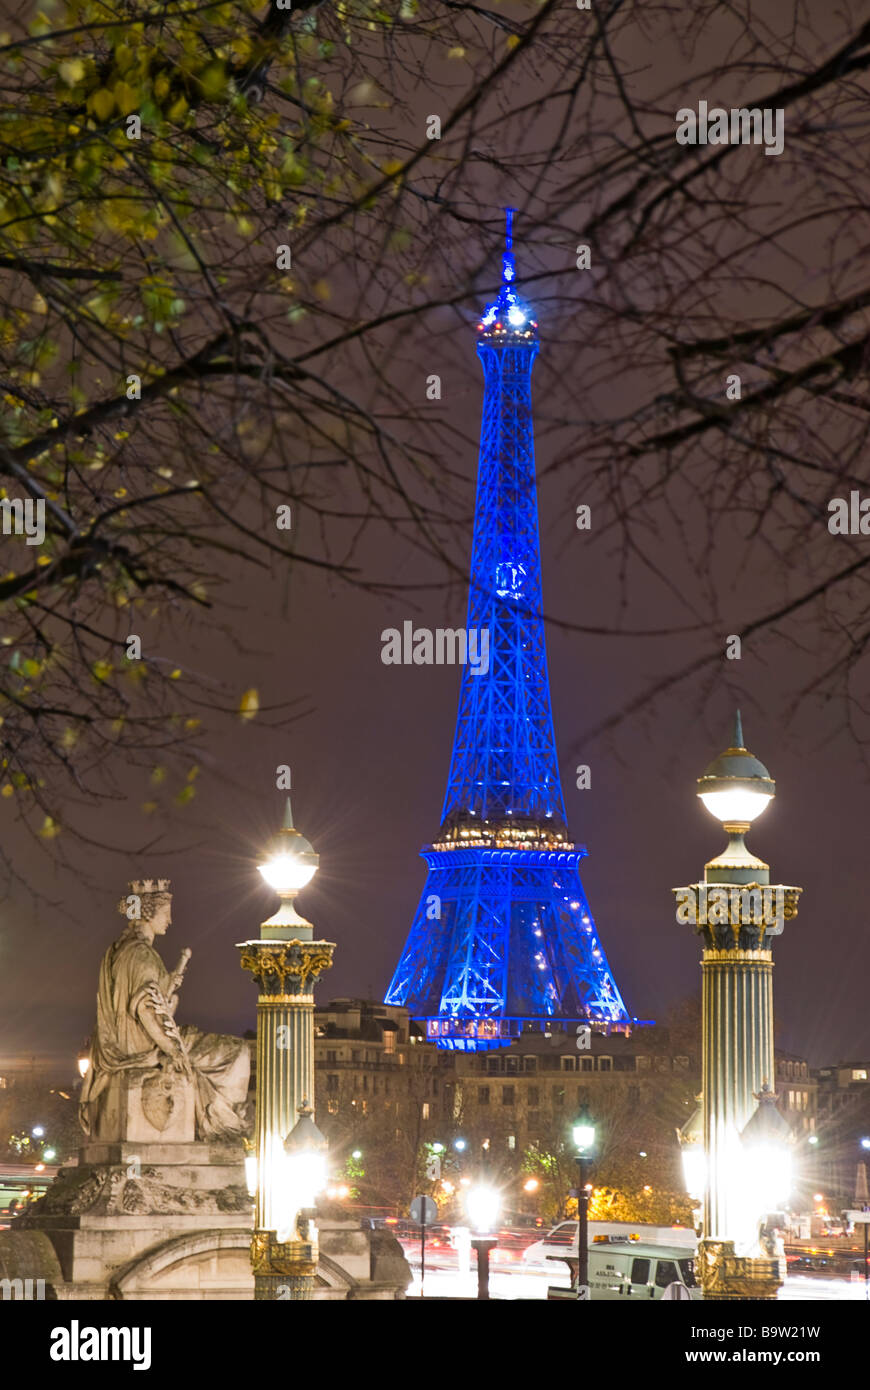 Vue sur la Tour Eiffel de nuit depuis le jardin des Tuileries, Paris, France, Europe Banque D'Images